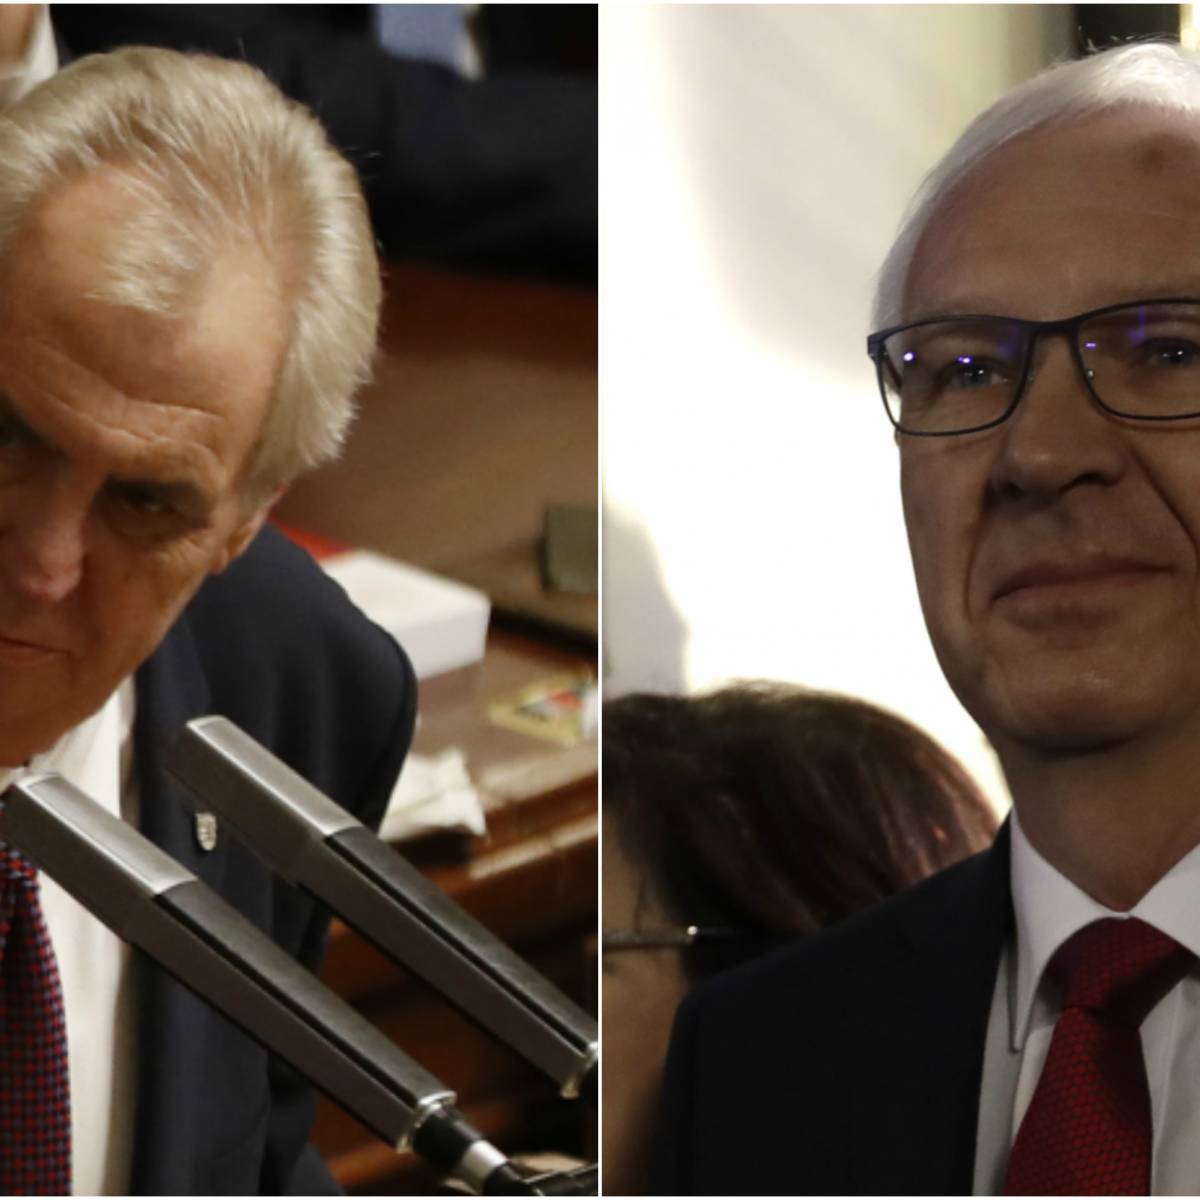 У чешских политиков перед выборами нет проблем, кроме Крыма